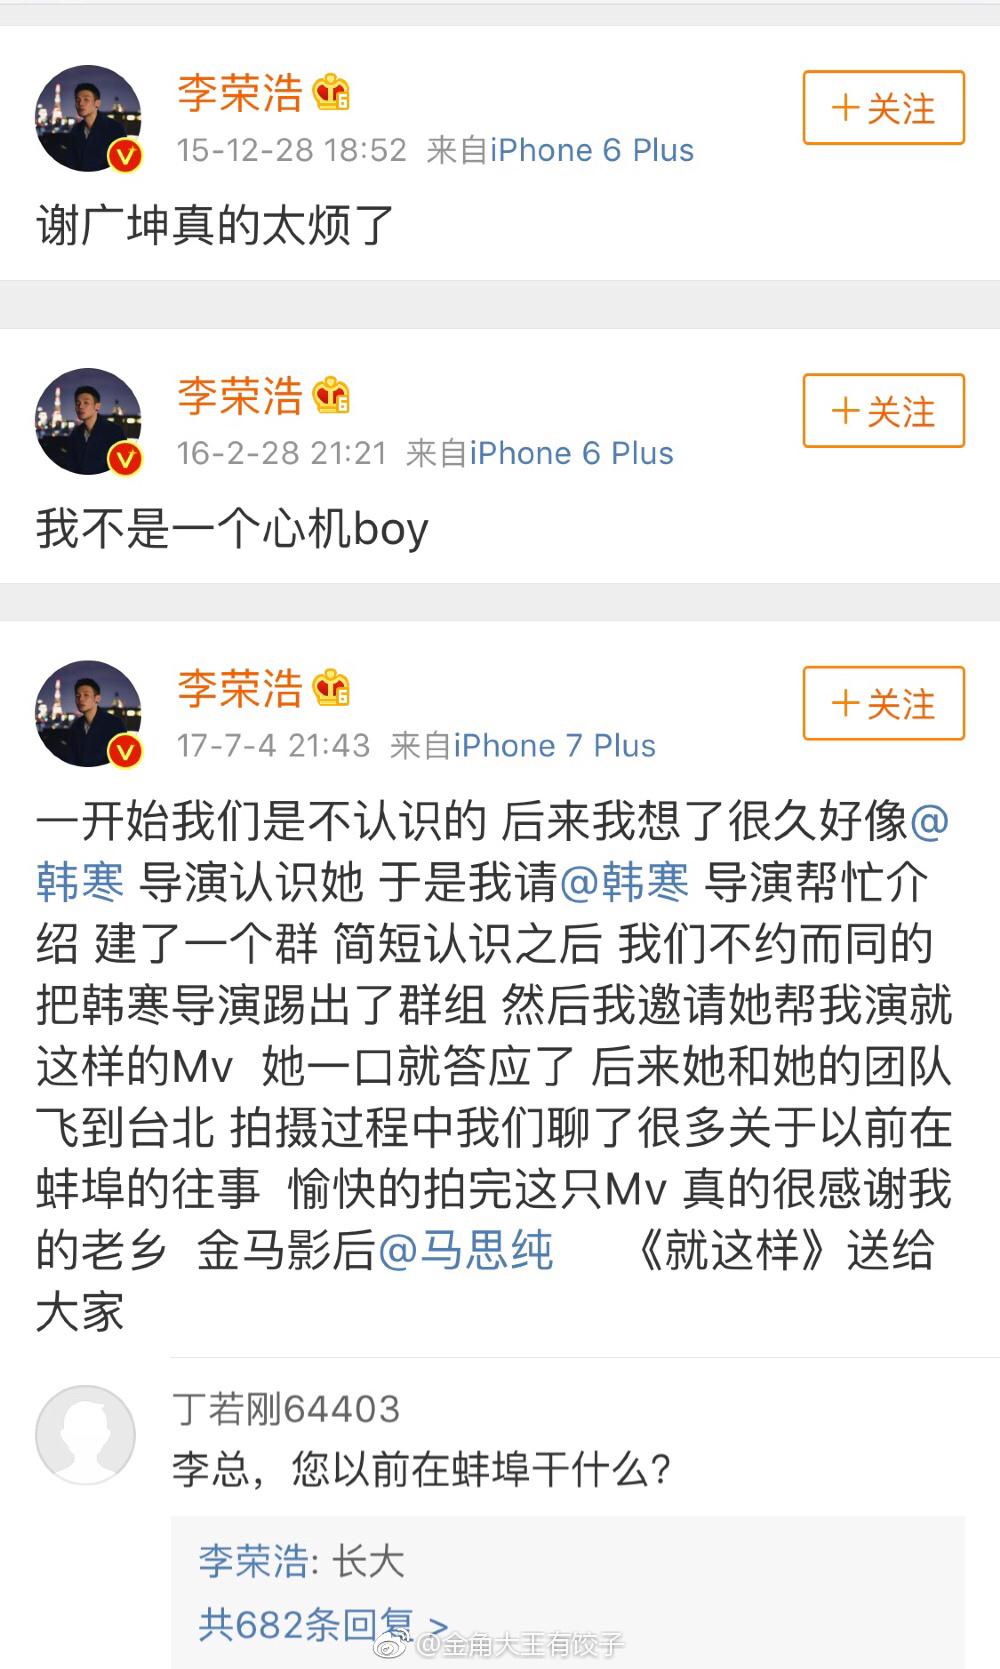 李荣浩和他的微博承包了我今日的快乐 ​​​​